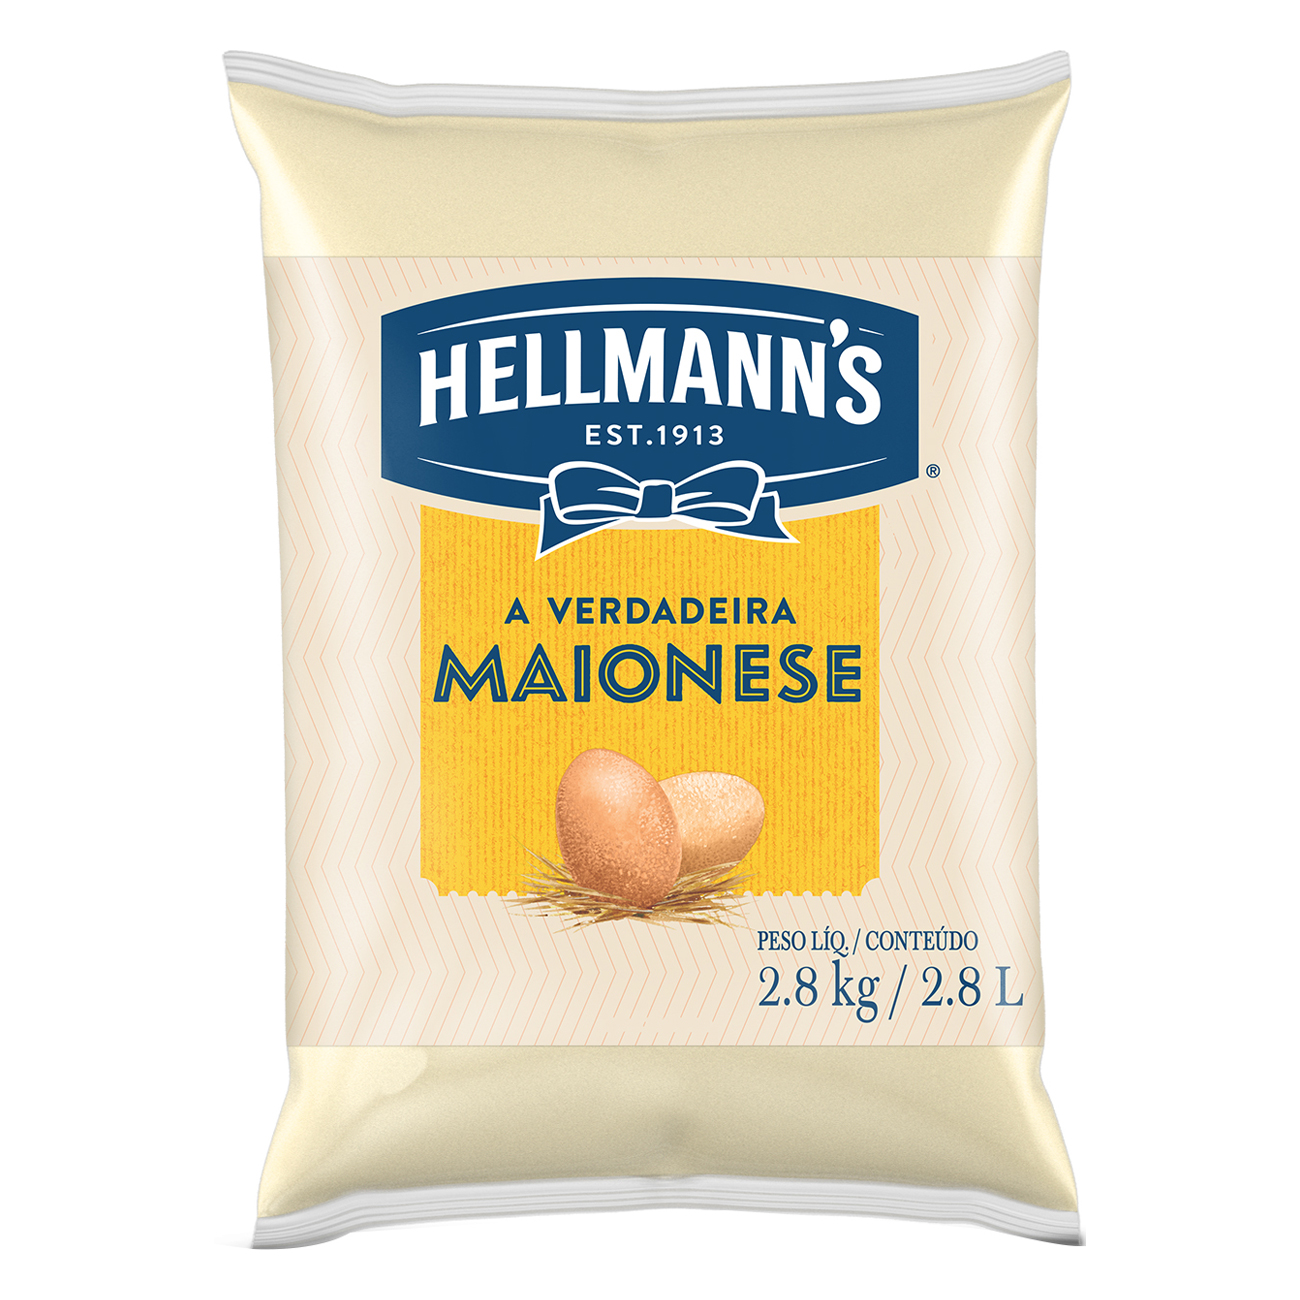 Maionese Hellmann's Tradicional Bag 2,8kg